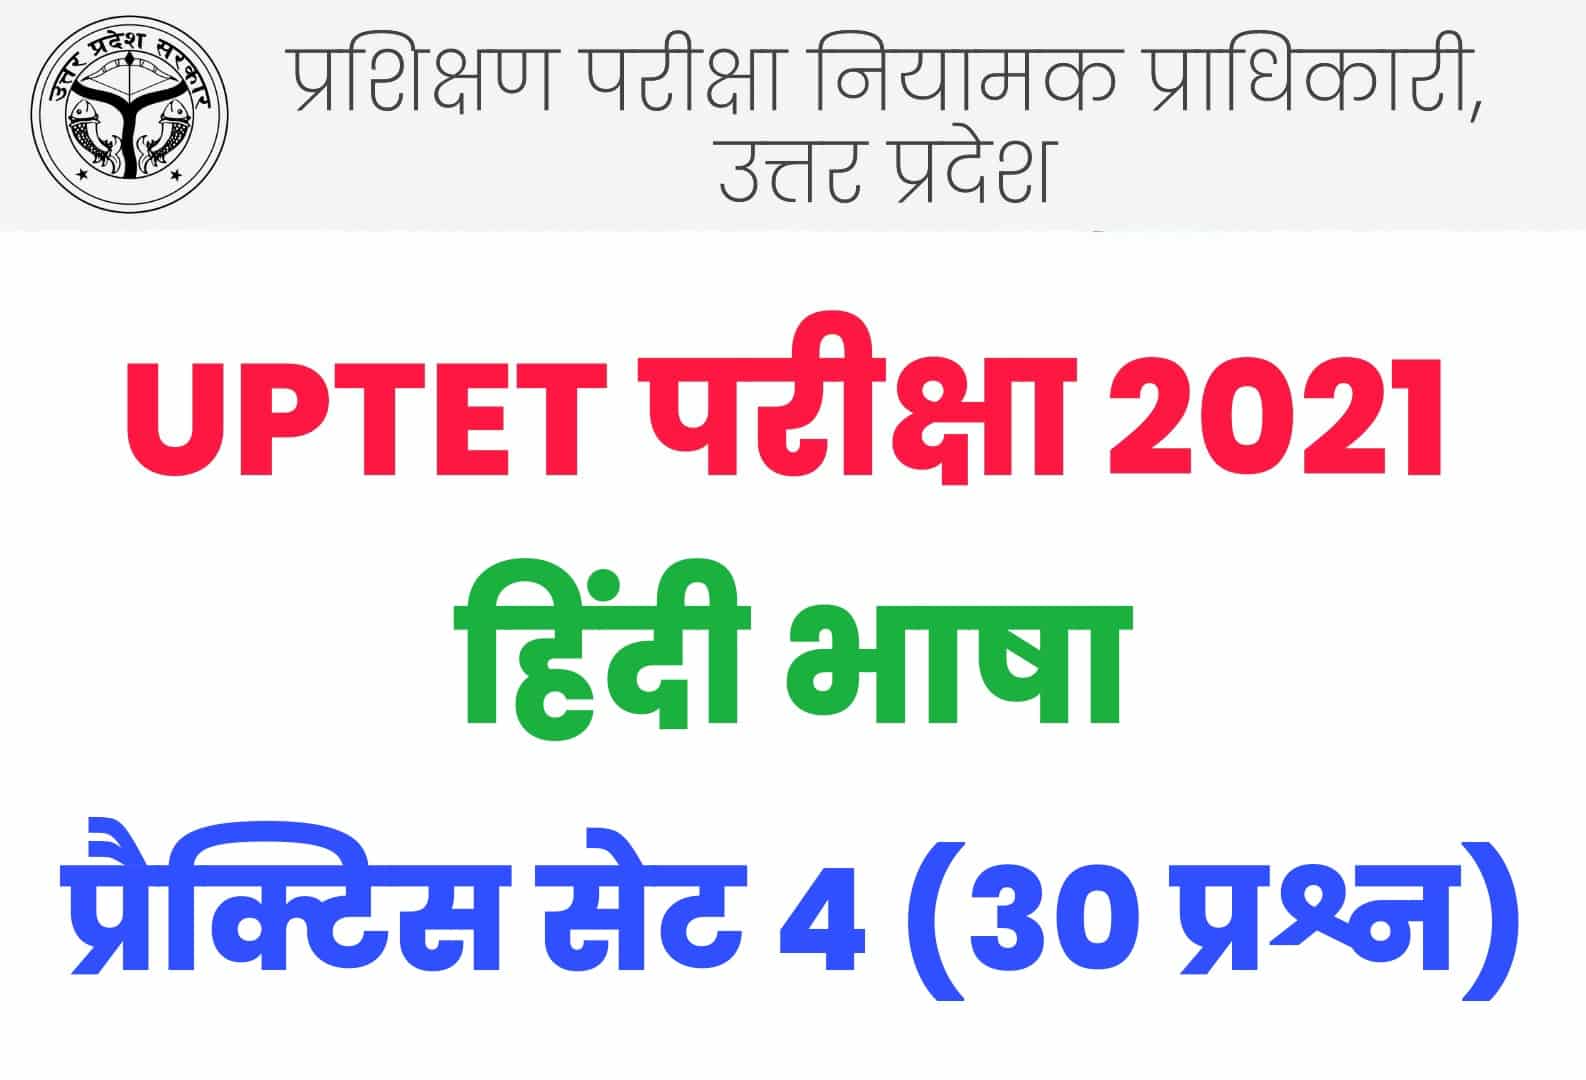 UPTET 2021 हिंदी भाषा प्रैक्टिस सेट